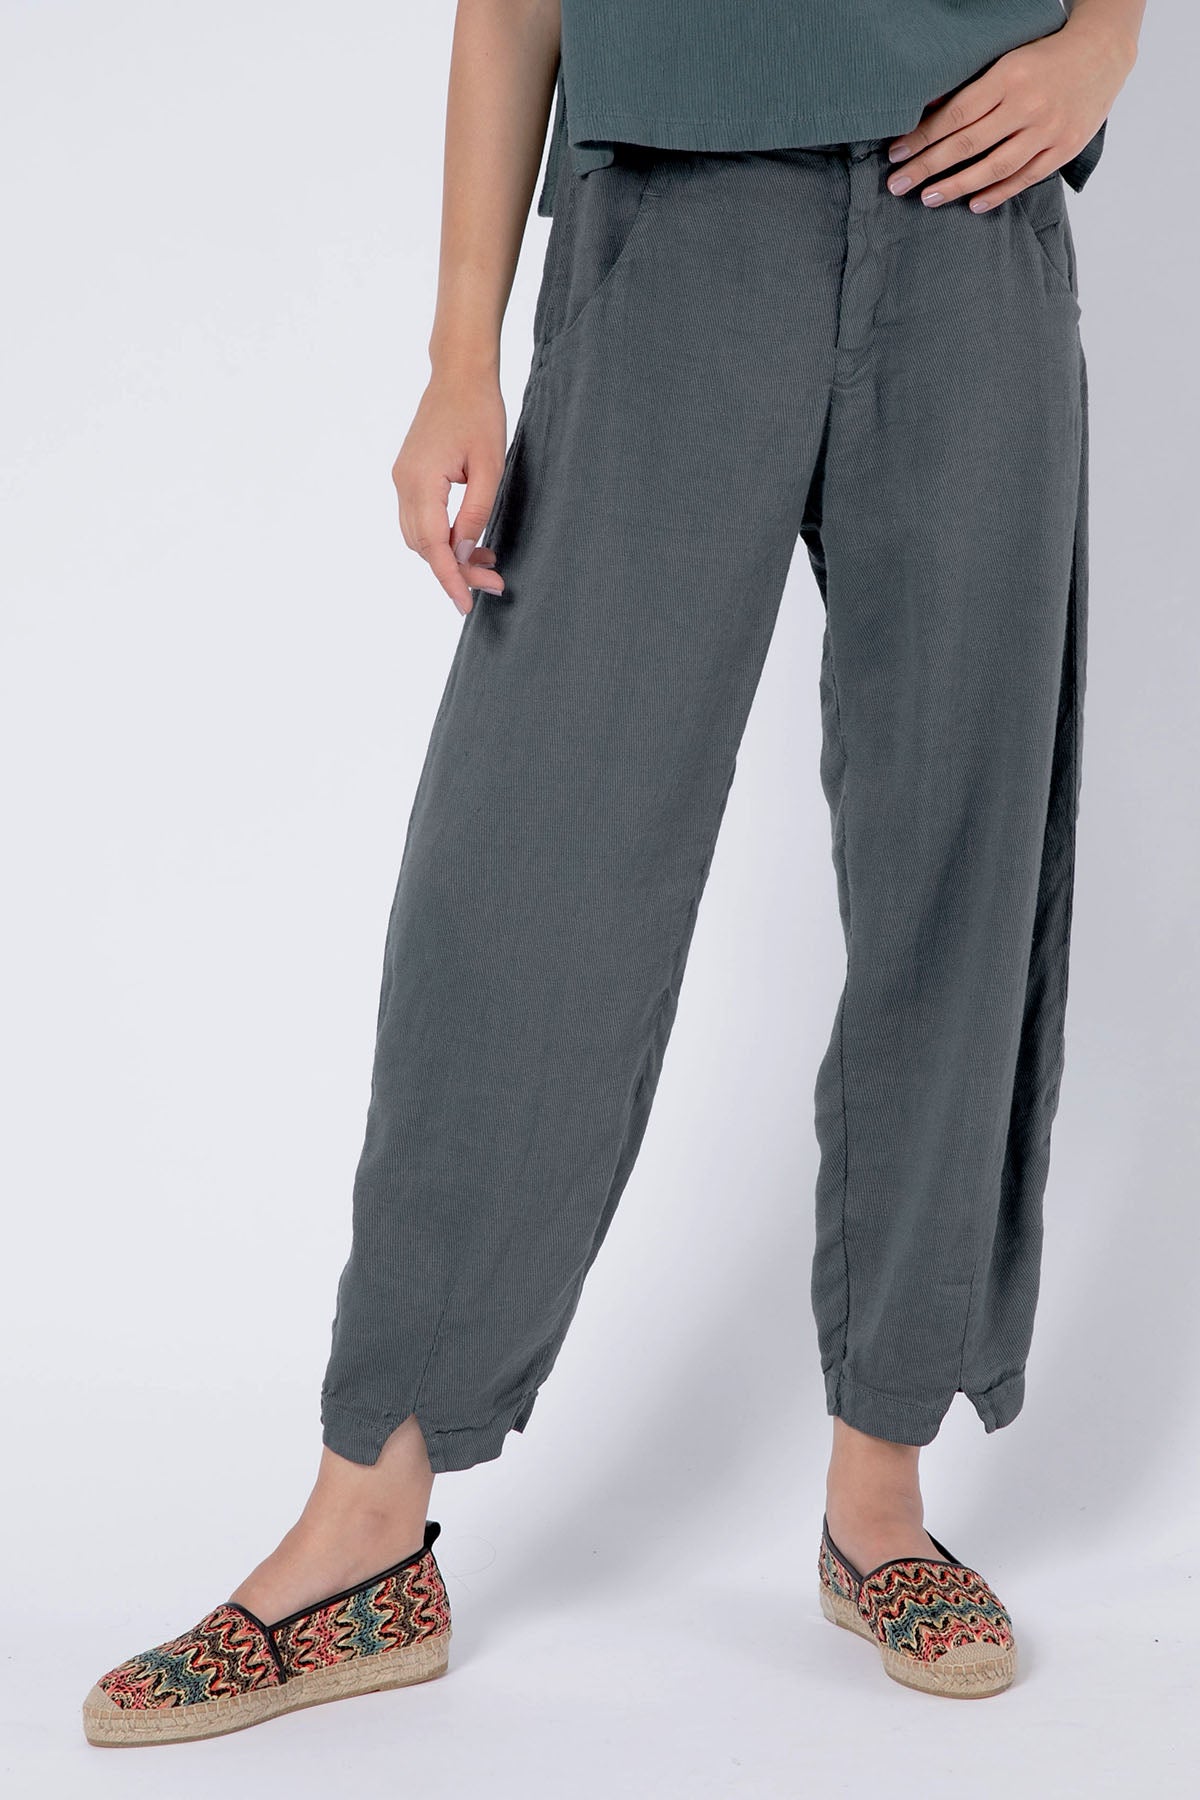 Transit Ketenli Pantolon-Libas Trendy Fashion Store